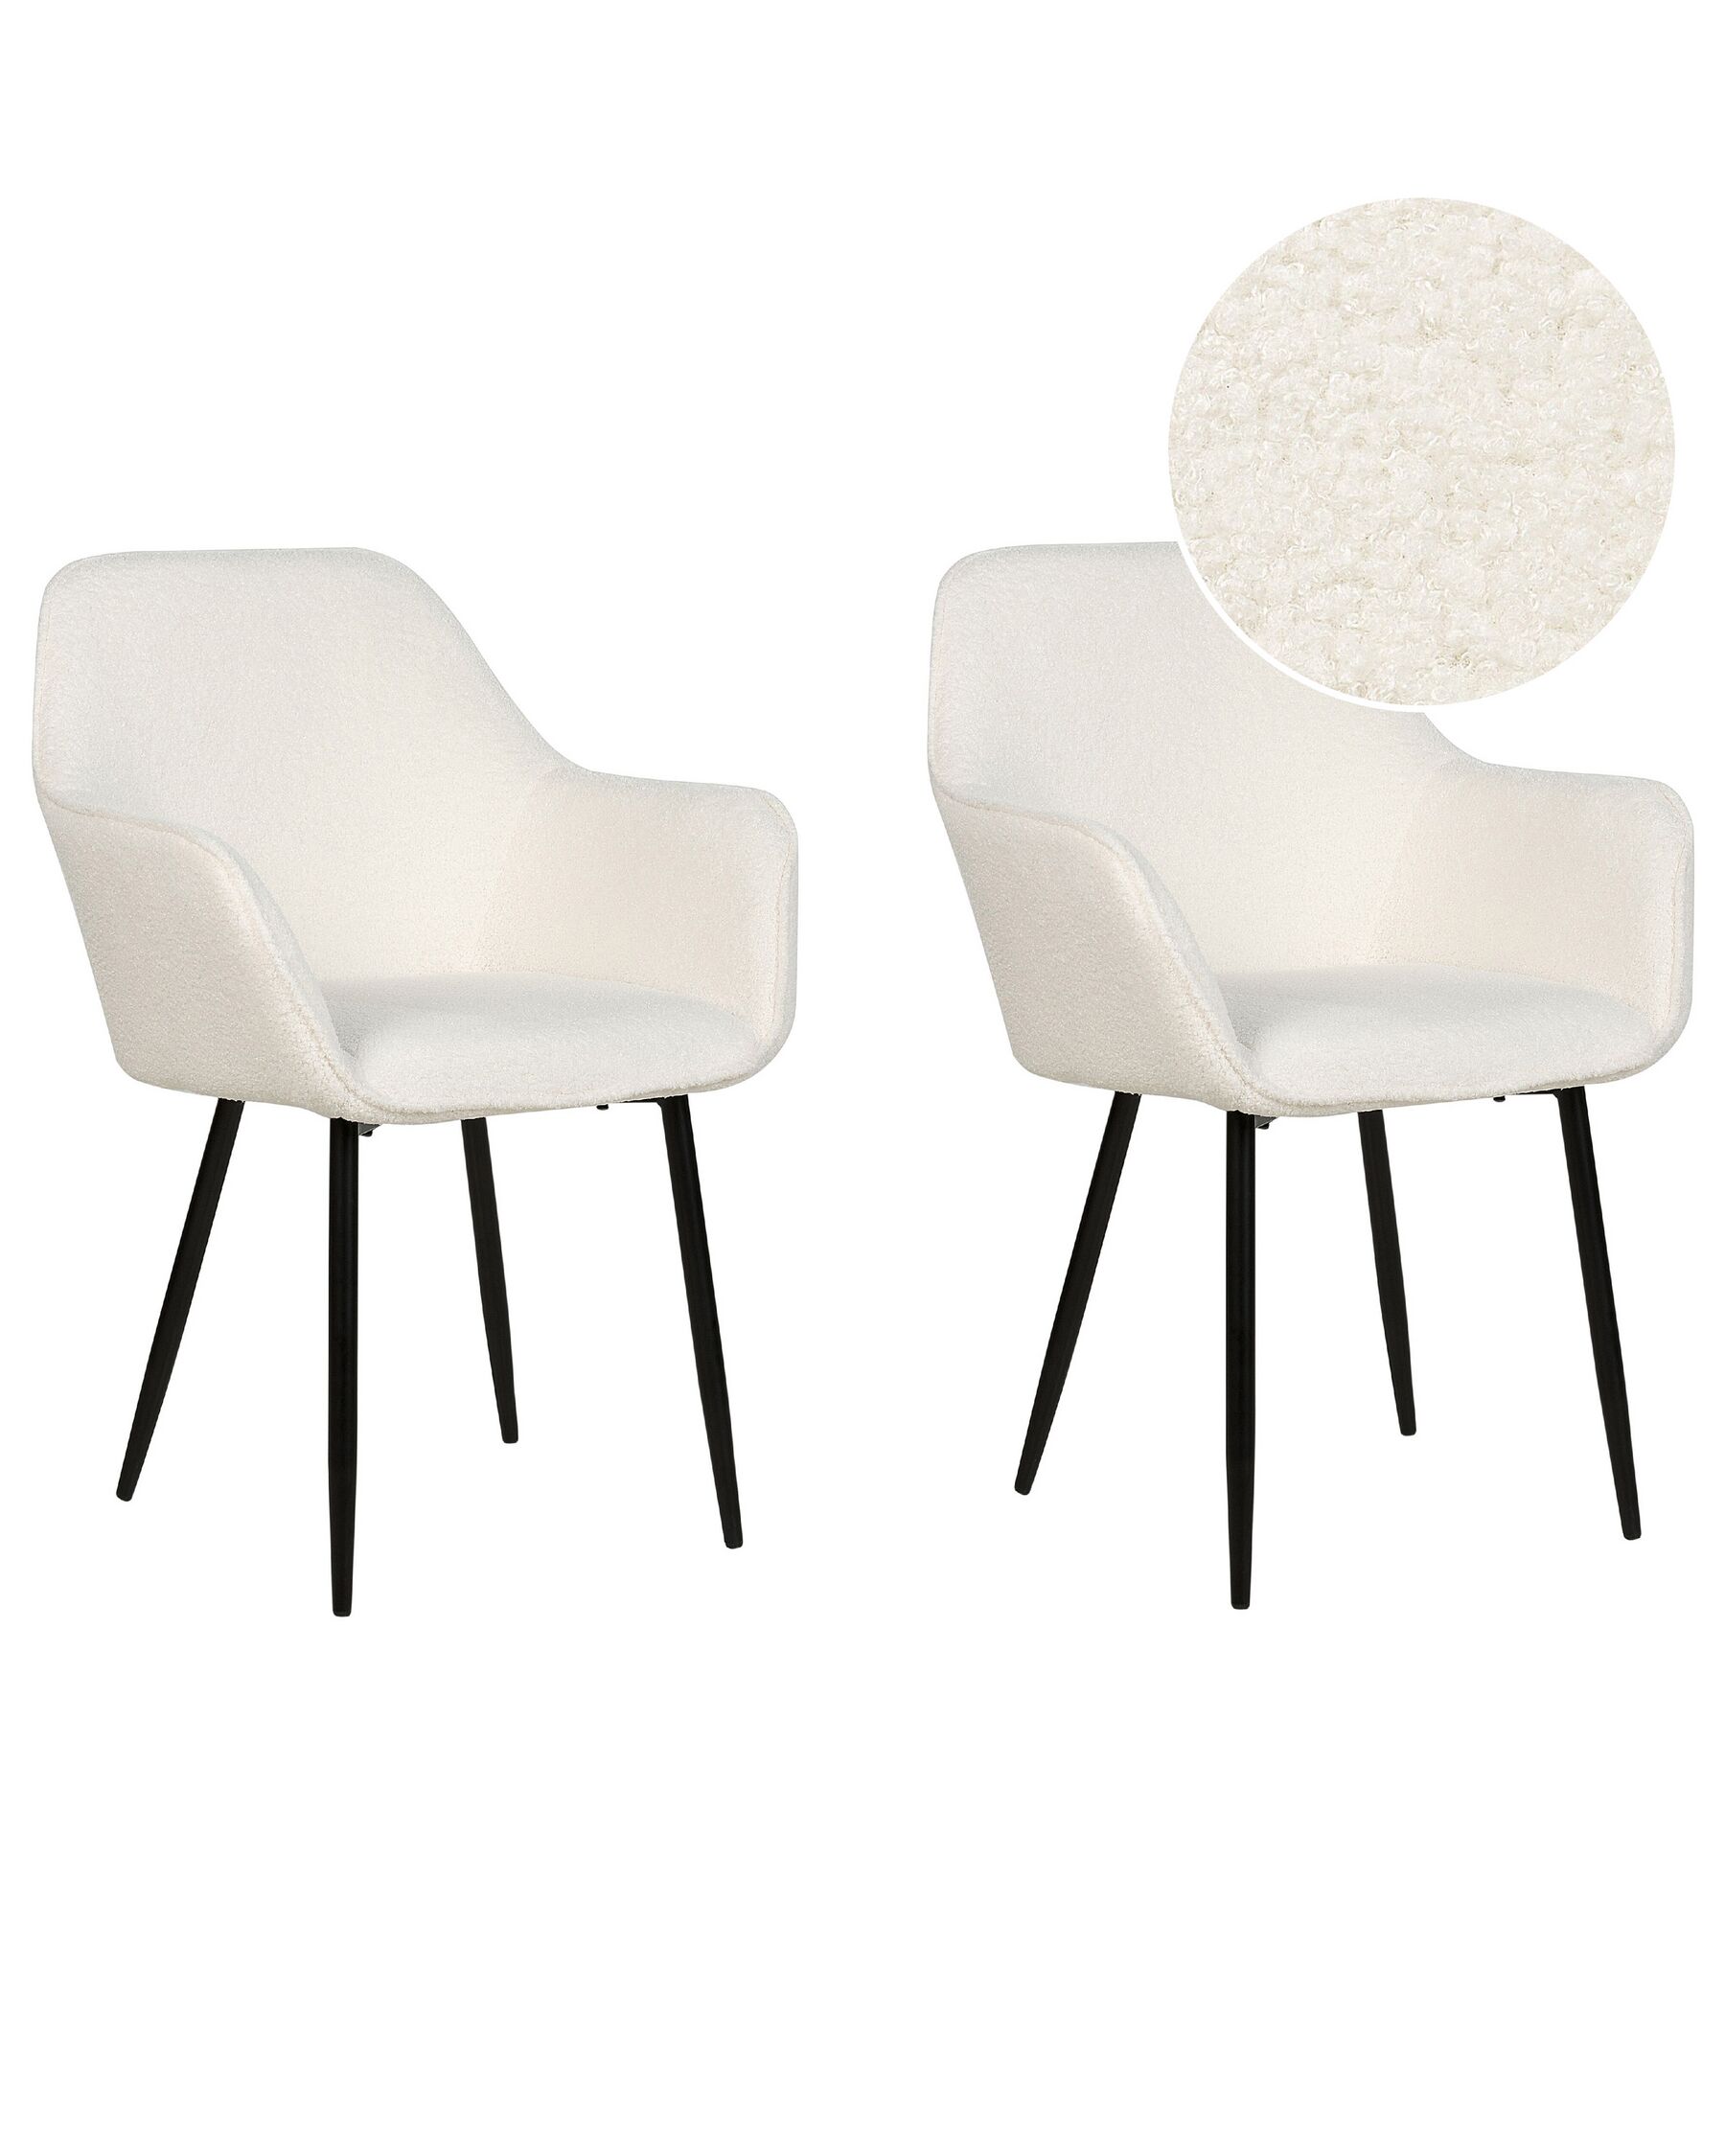 Sada 2 jídelních židlí s buklé čalouněním bílé ALDEN_877501